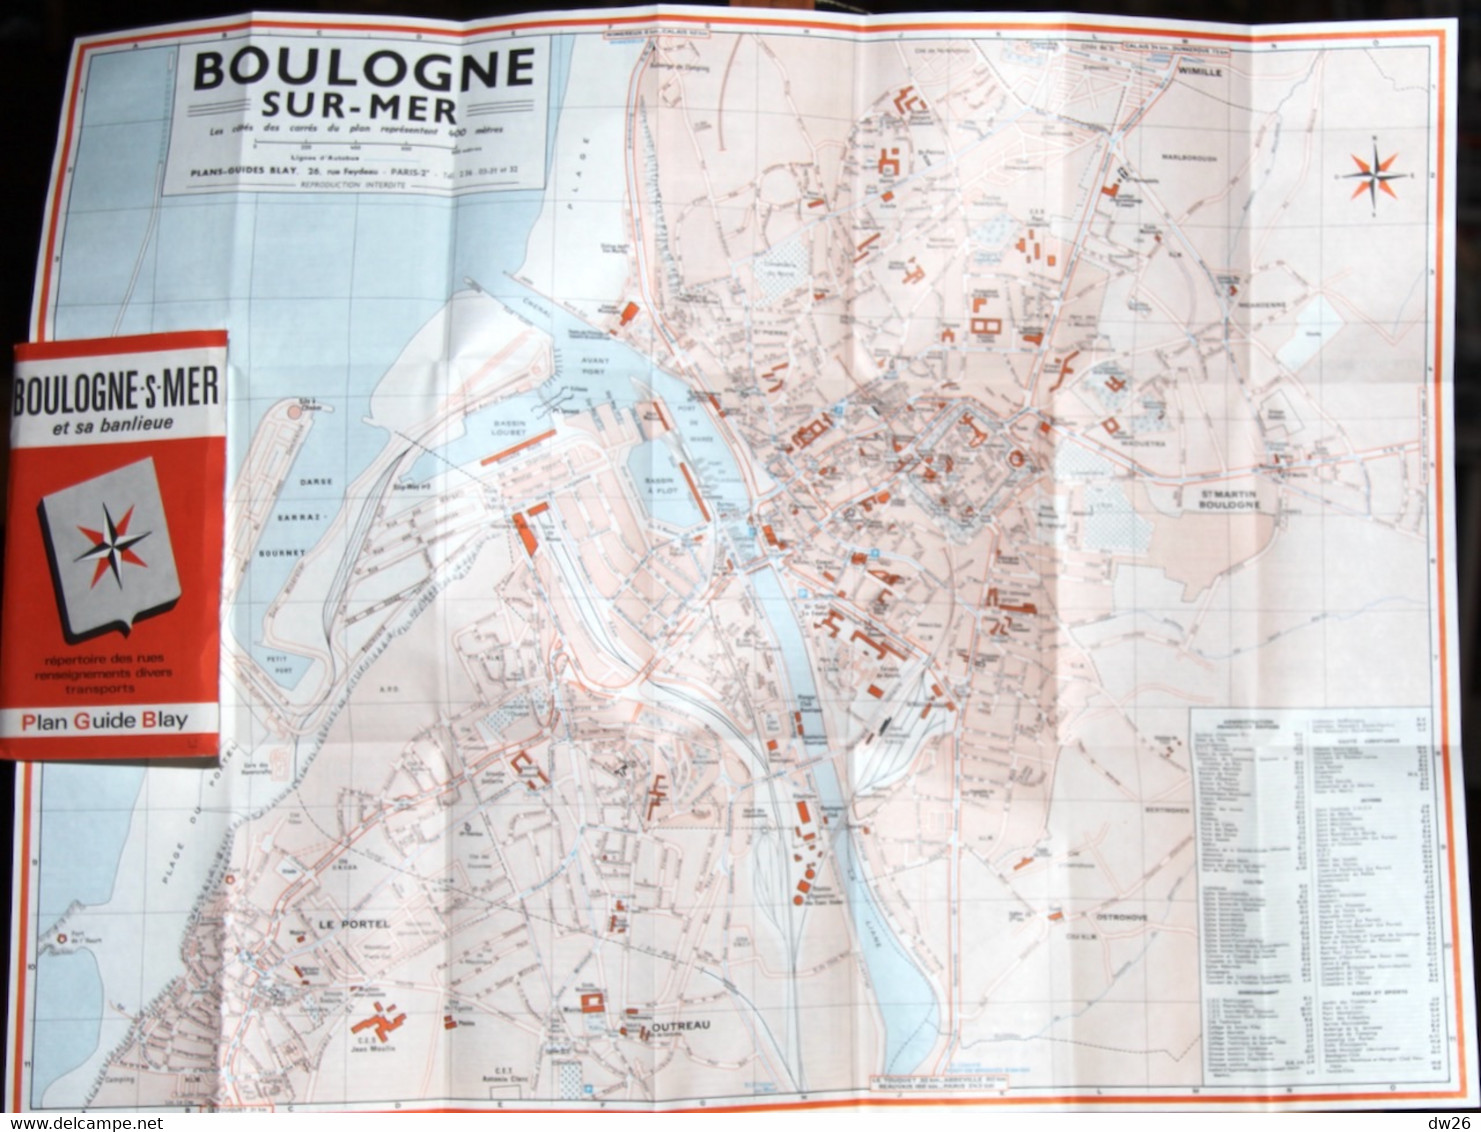 Plan Guide Blay: Boulogne-sur-Mer Et Sa Banlieue - Renseignements Divers, Transports, Répertoire Des Rues - Otros & Sin Clasificación